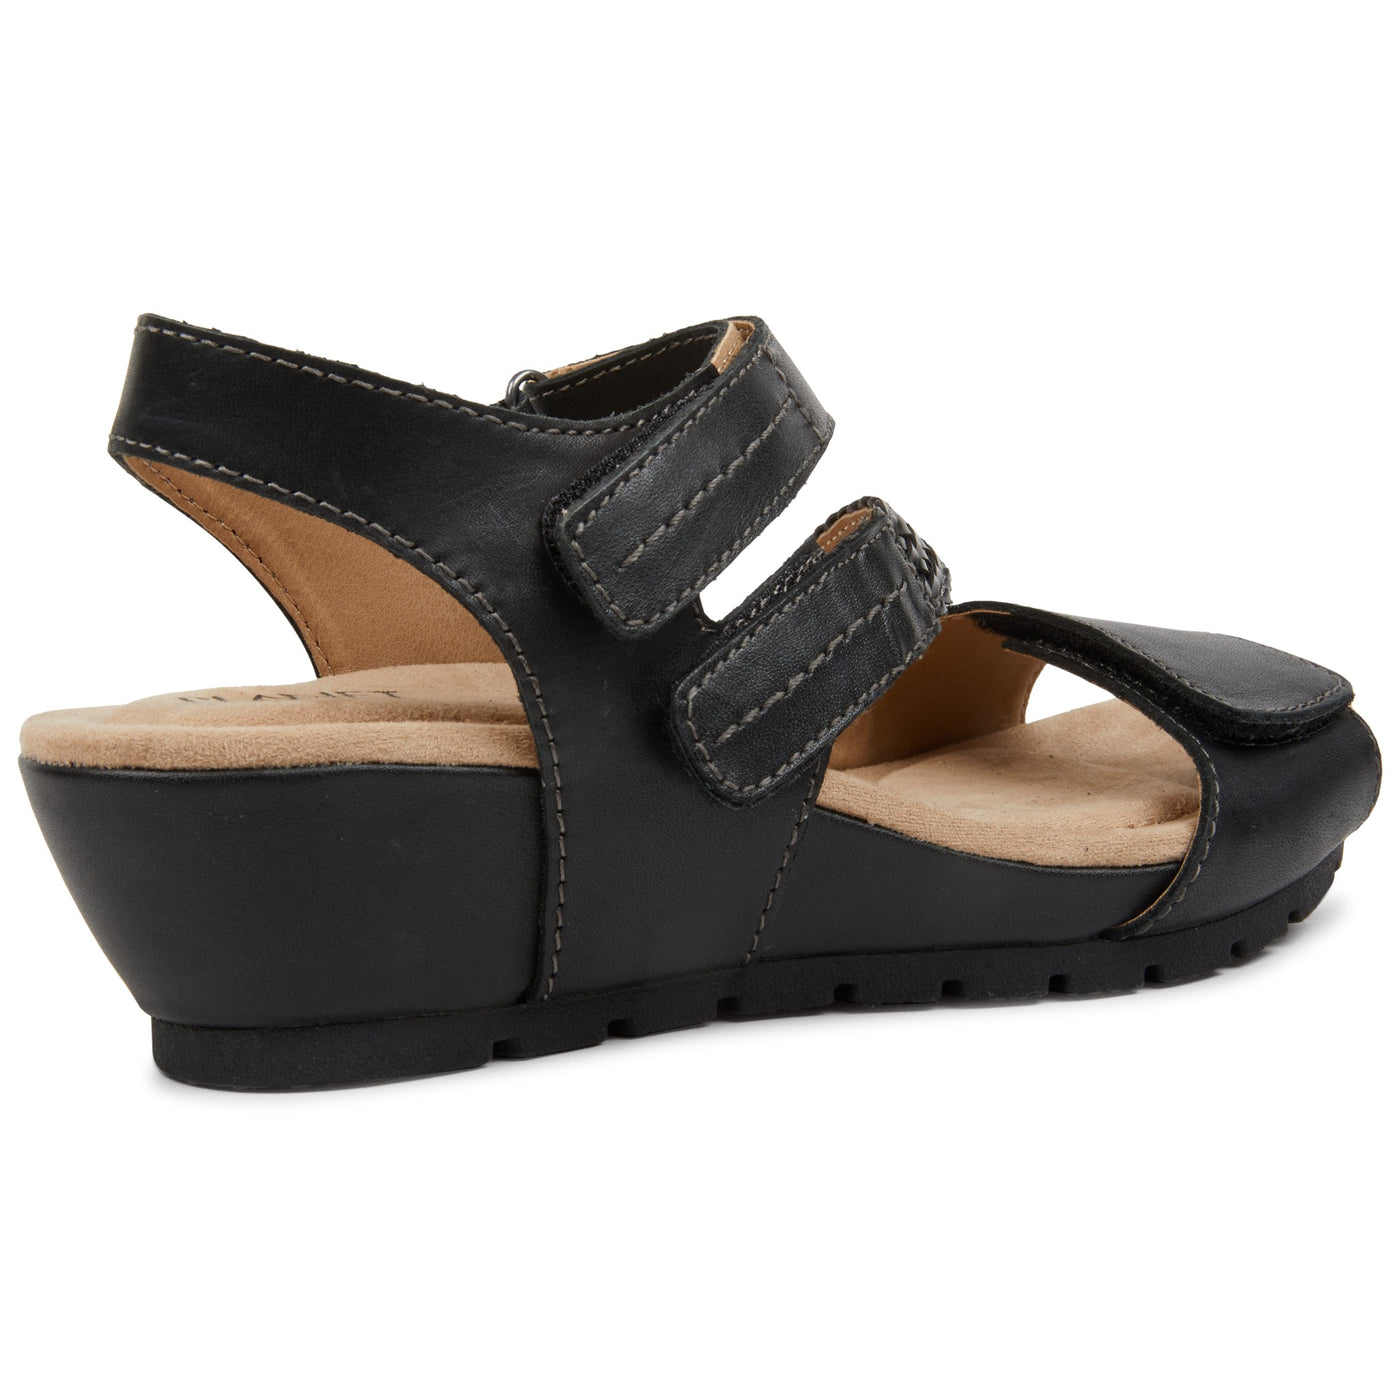 PLANET SHOES NOMAD BLACK - Women Sandals - Collective Shoes 